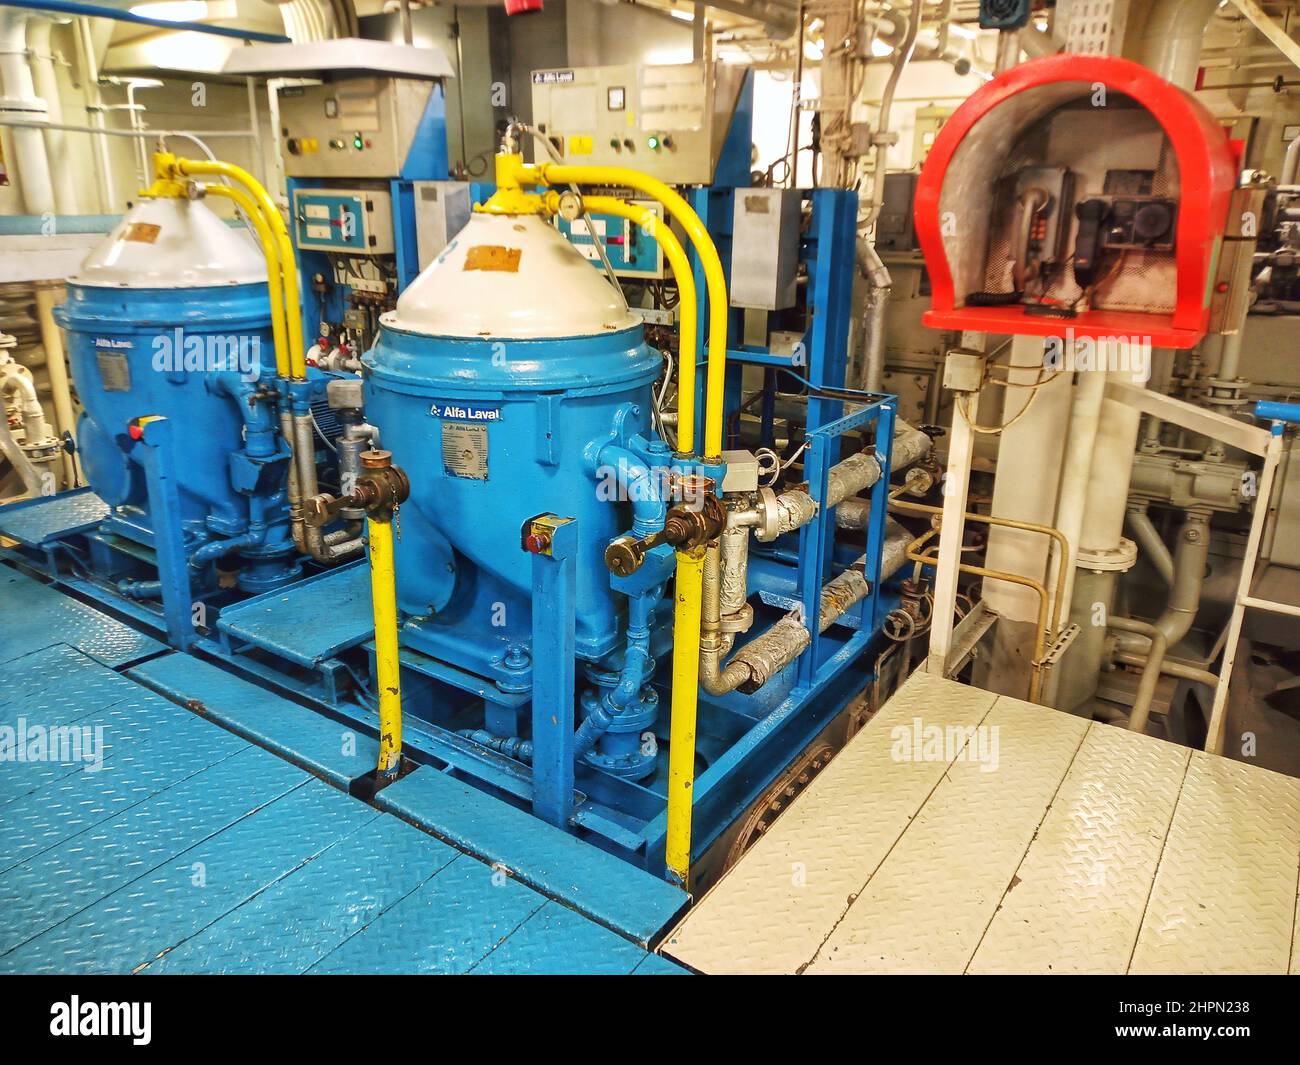 système de purificateur d'huile lub à bord du navire, système de purificateur à bord du navire marchand, téléphone d'urgence dans la salle des machines, salle des machines du navire Banque D'Images